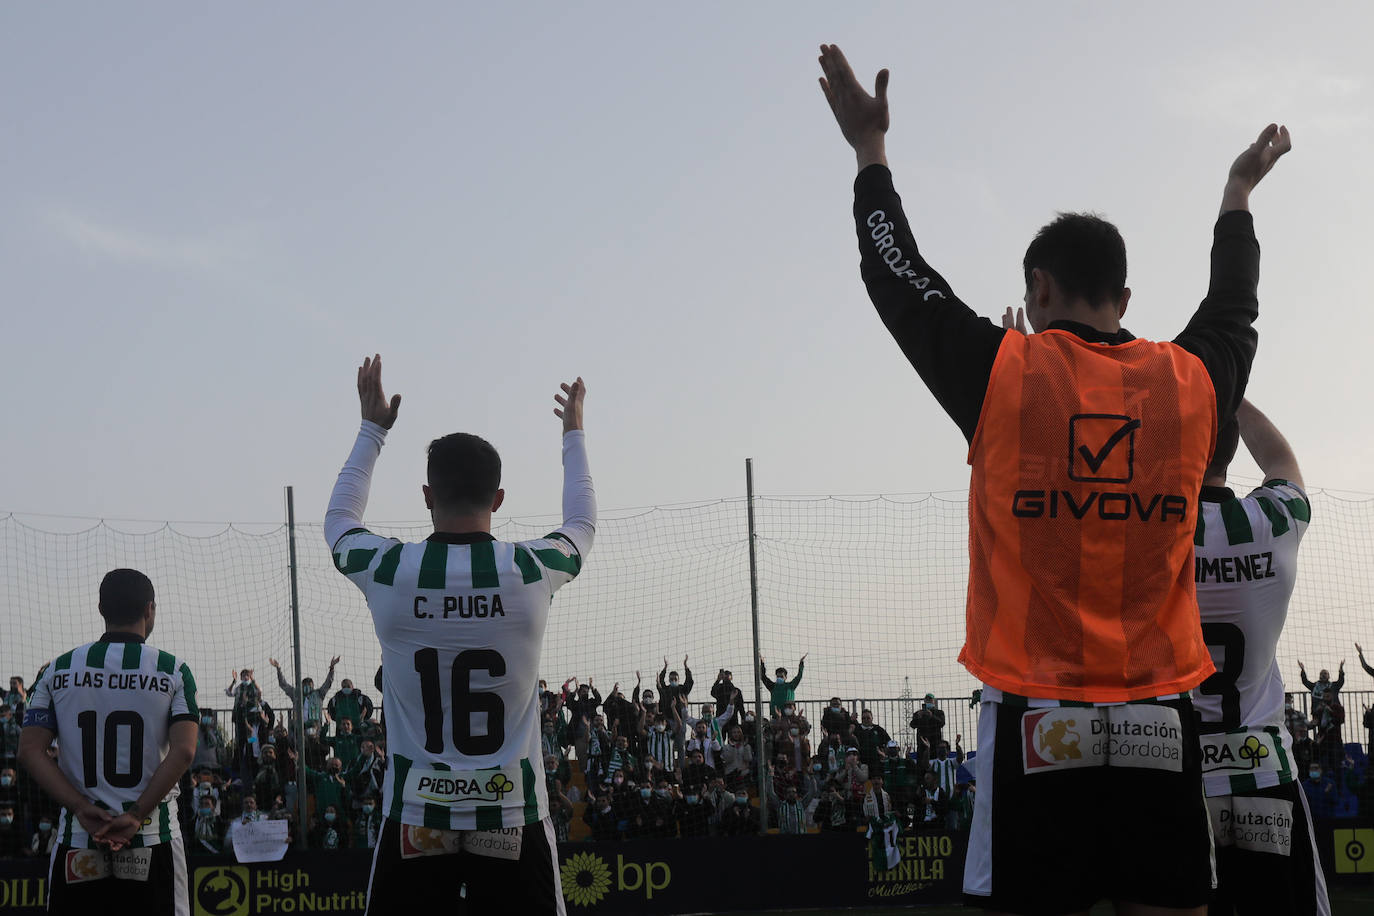 El Cádiz B - Córdoba CF, en imágenes